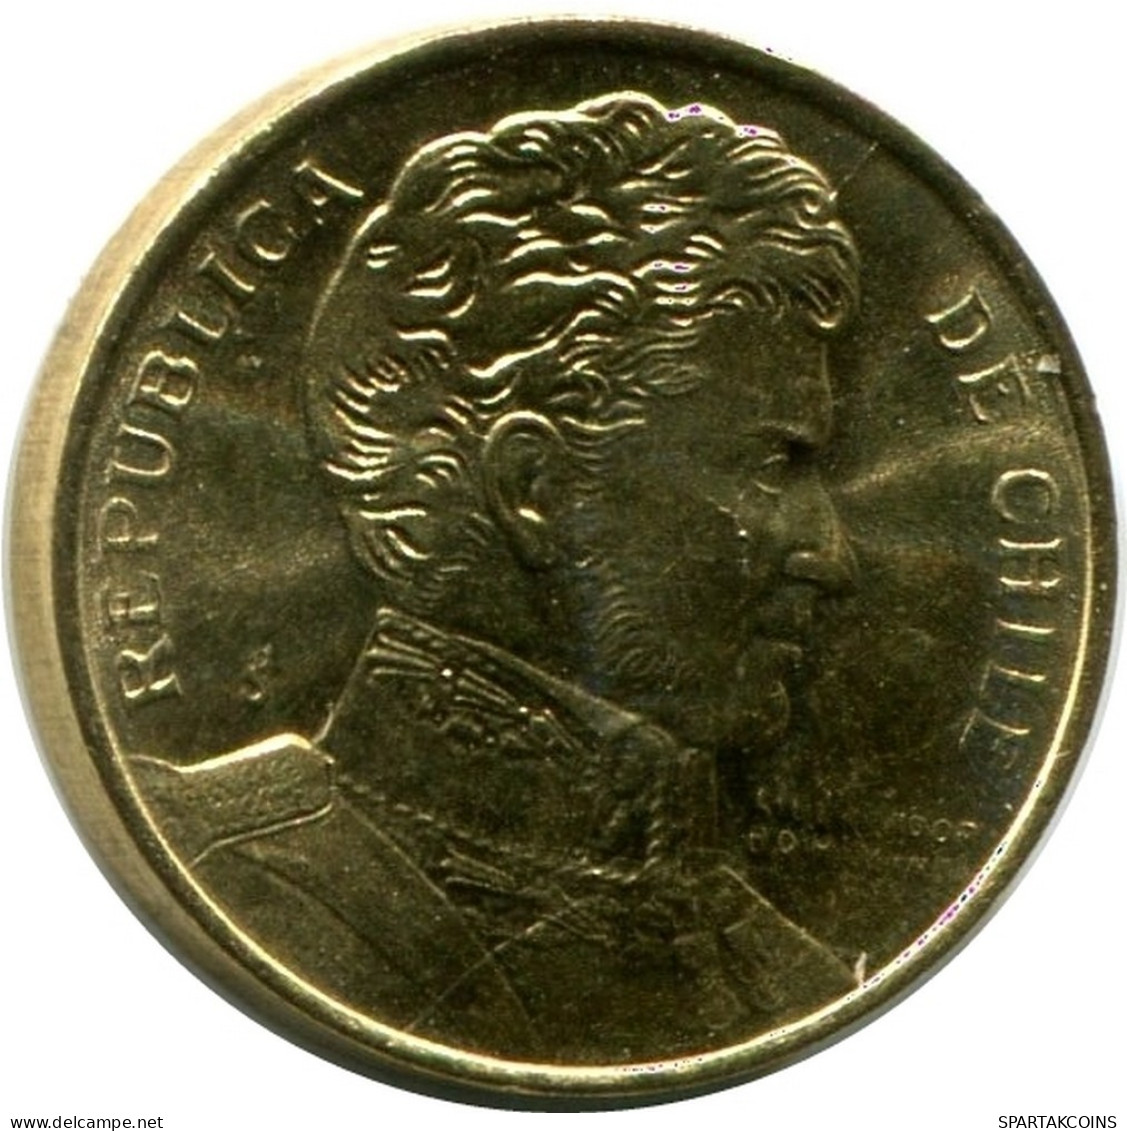 1 PESO 1990 CHILE UNC Moneda #M10146.E.A - Chile